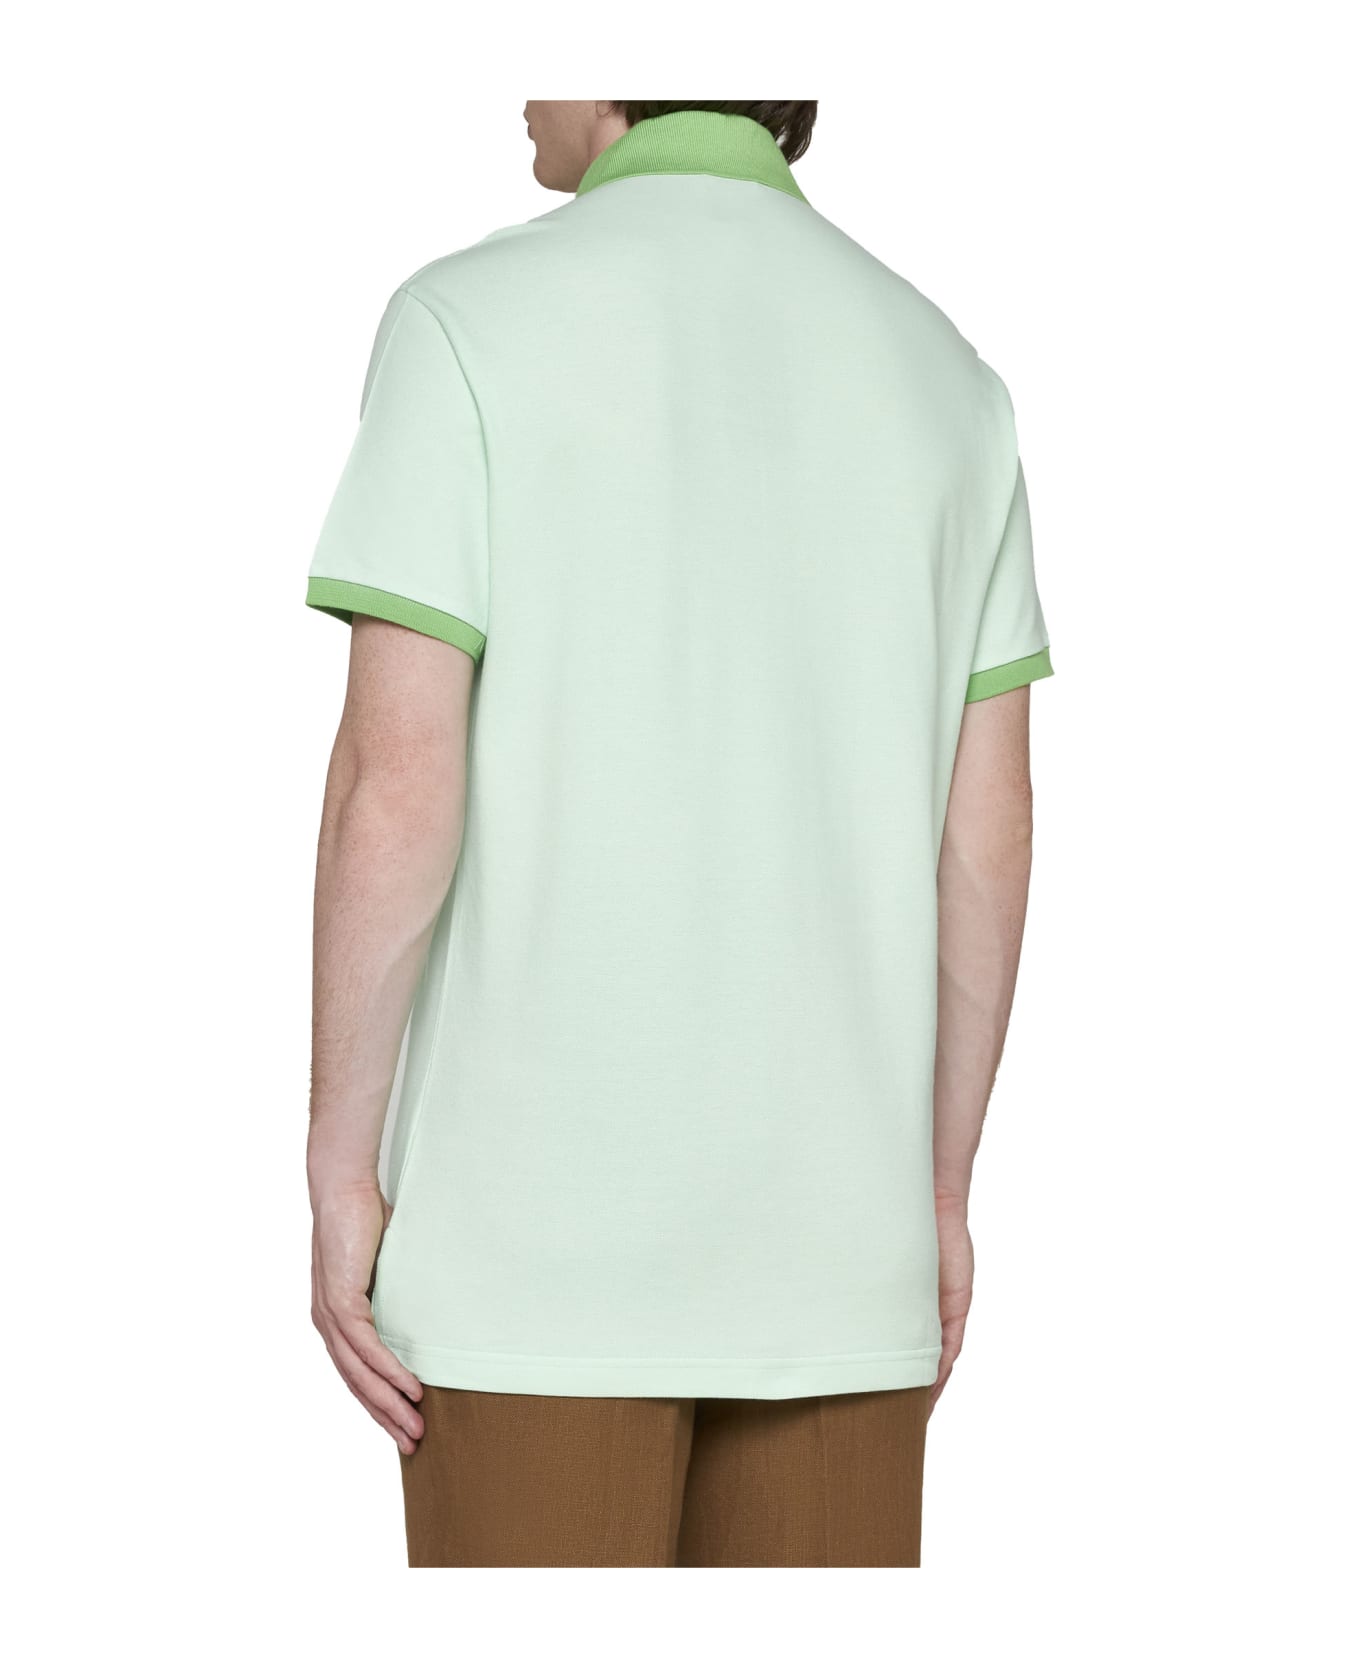 Etro Polo Shirt - Verde chiaro